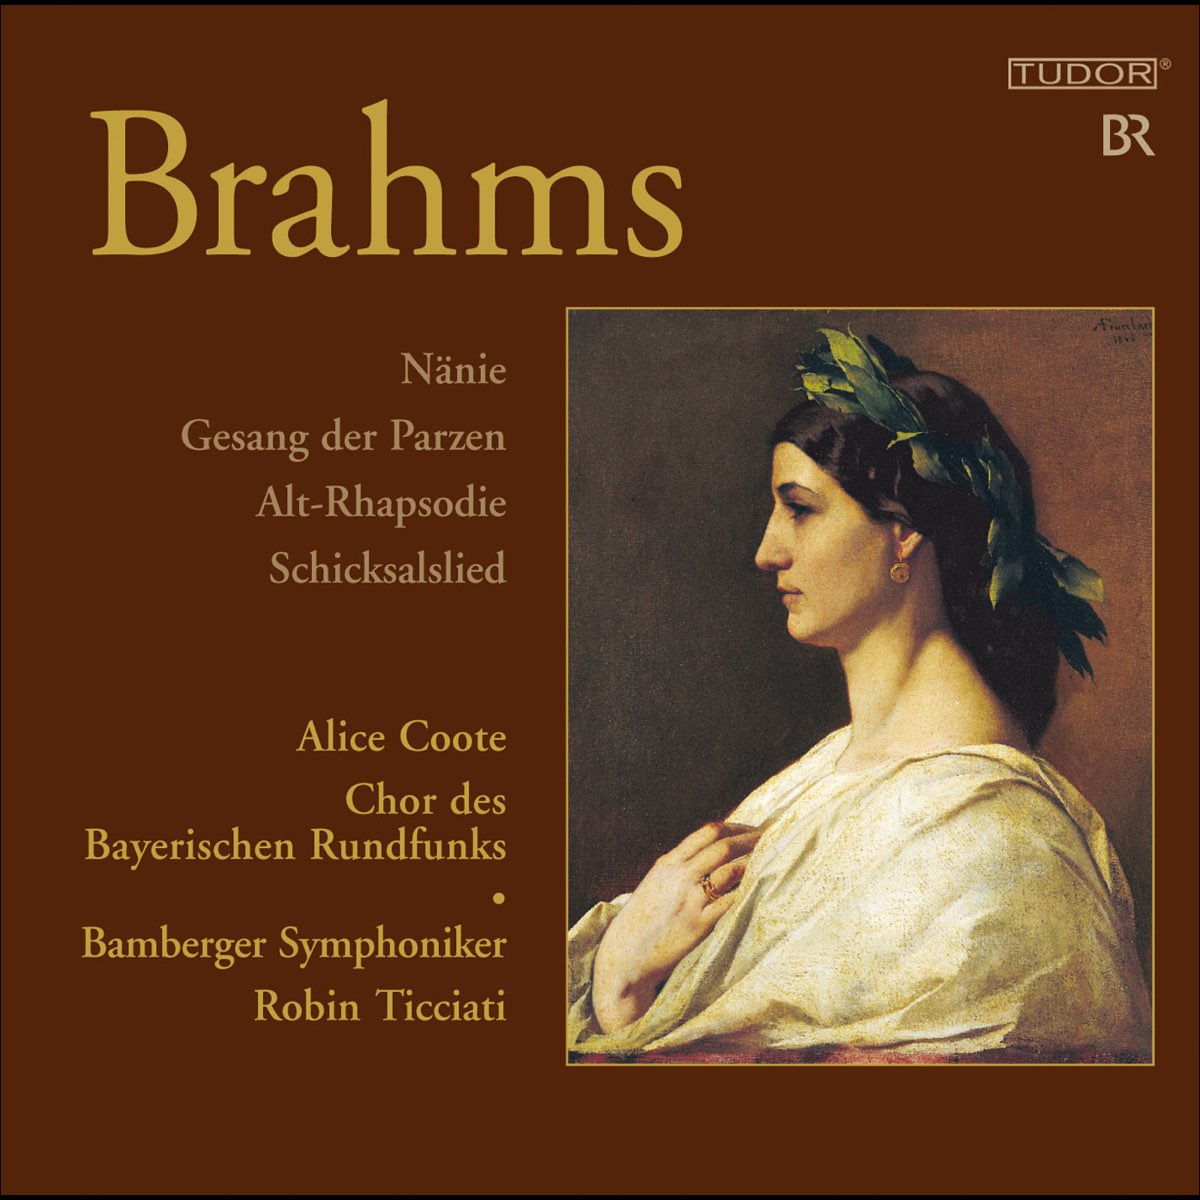 ‎Brahms, J.: Nanie - Gesang der Parzen - Alto Rhapsody - Schicksalslied ...